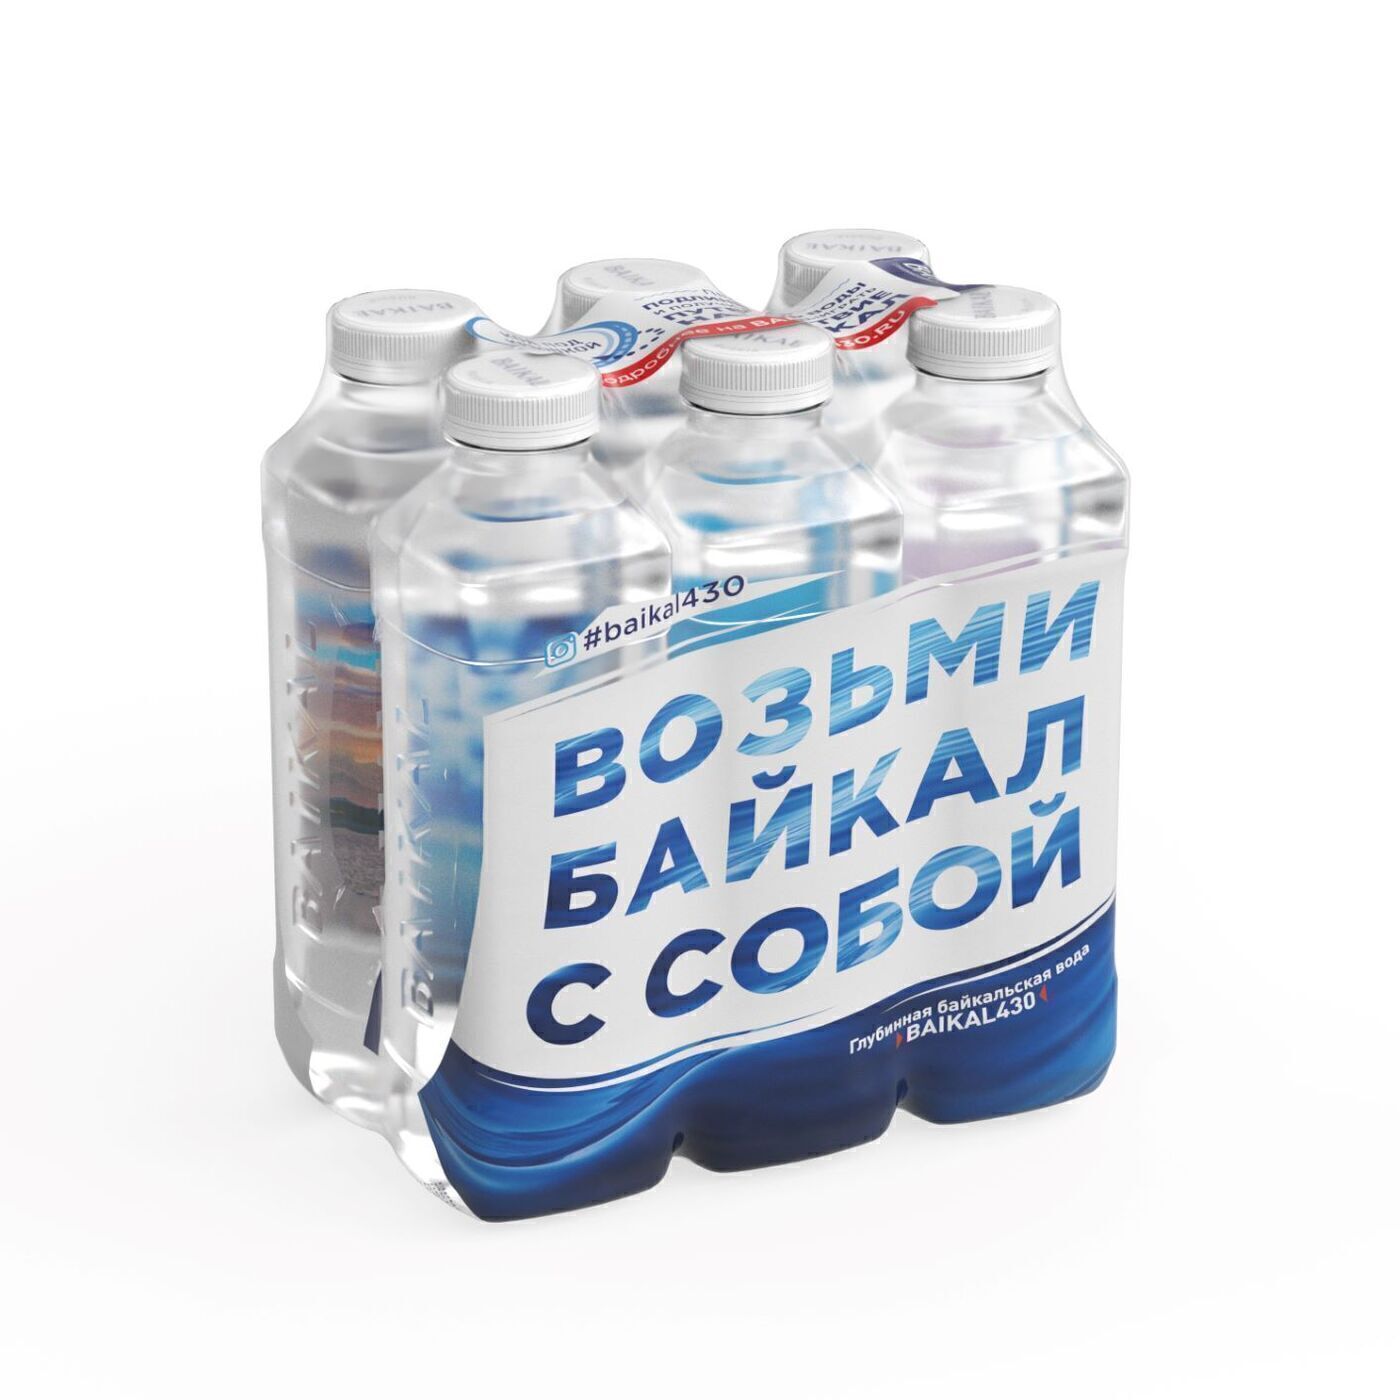 Можно пить воду из байкала. Baikal 430 Байкальская глубинная вода, негаз., 0,85 л., ПЭТ. Вода Байкал негазированная 0,85л, ПЭТ. Байкальская глубинная baikal430. Вода Байкал 430 0,85 л, 6шт.